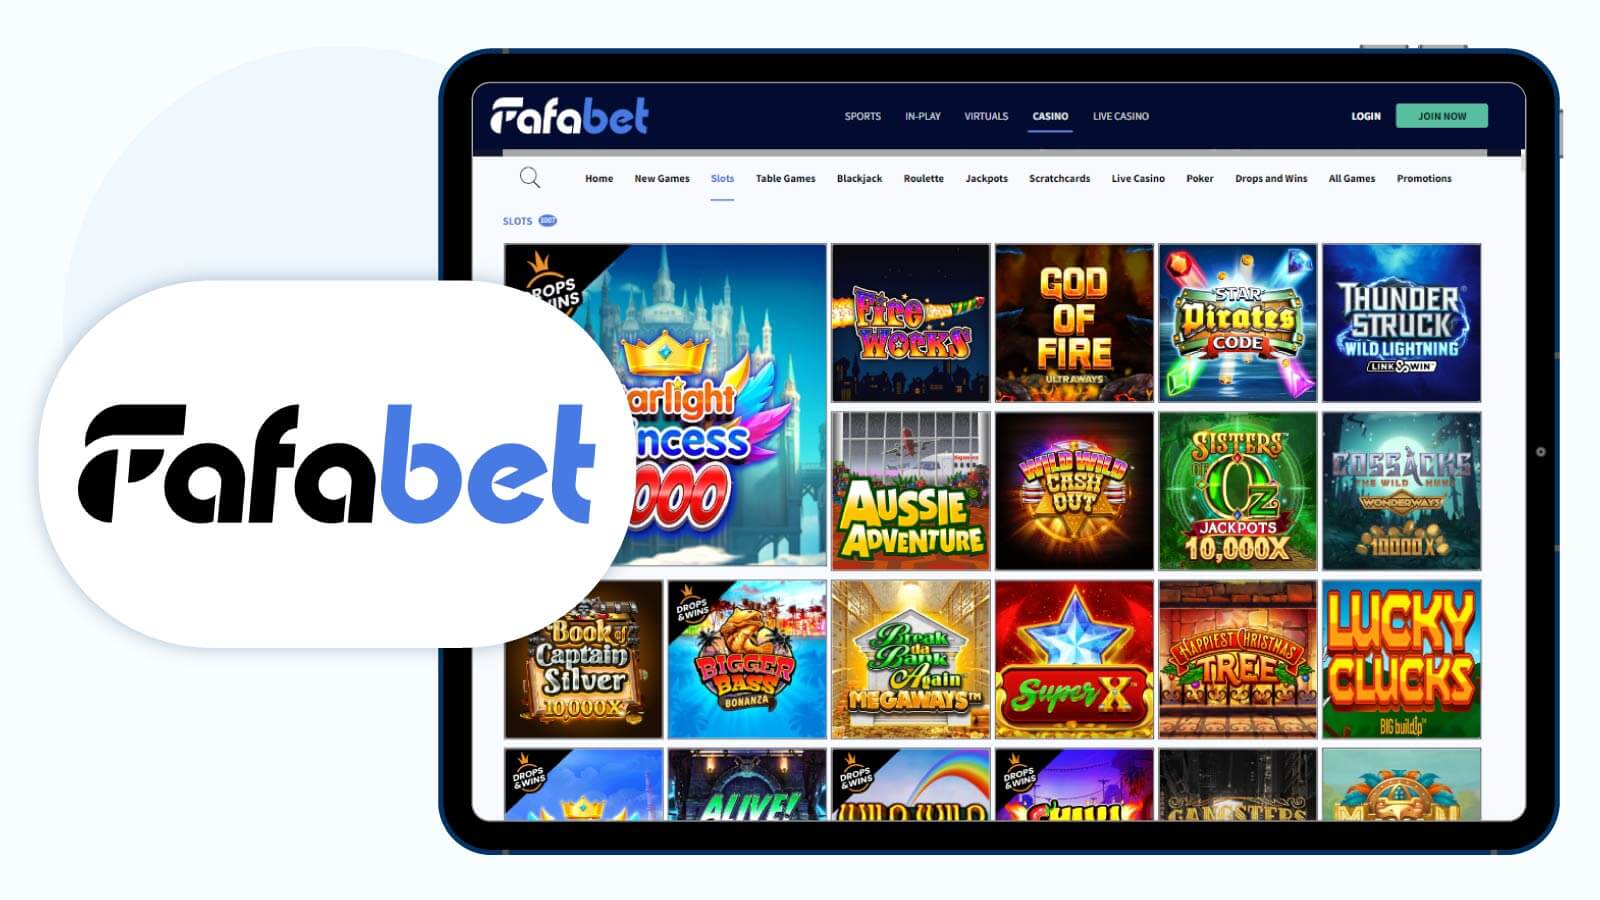 Fafabet Casino Best Alternative £20 Deposit Bonus in the UK